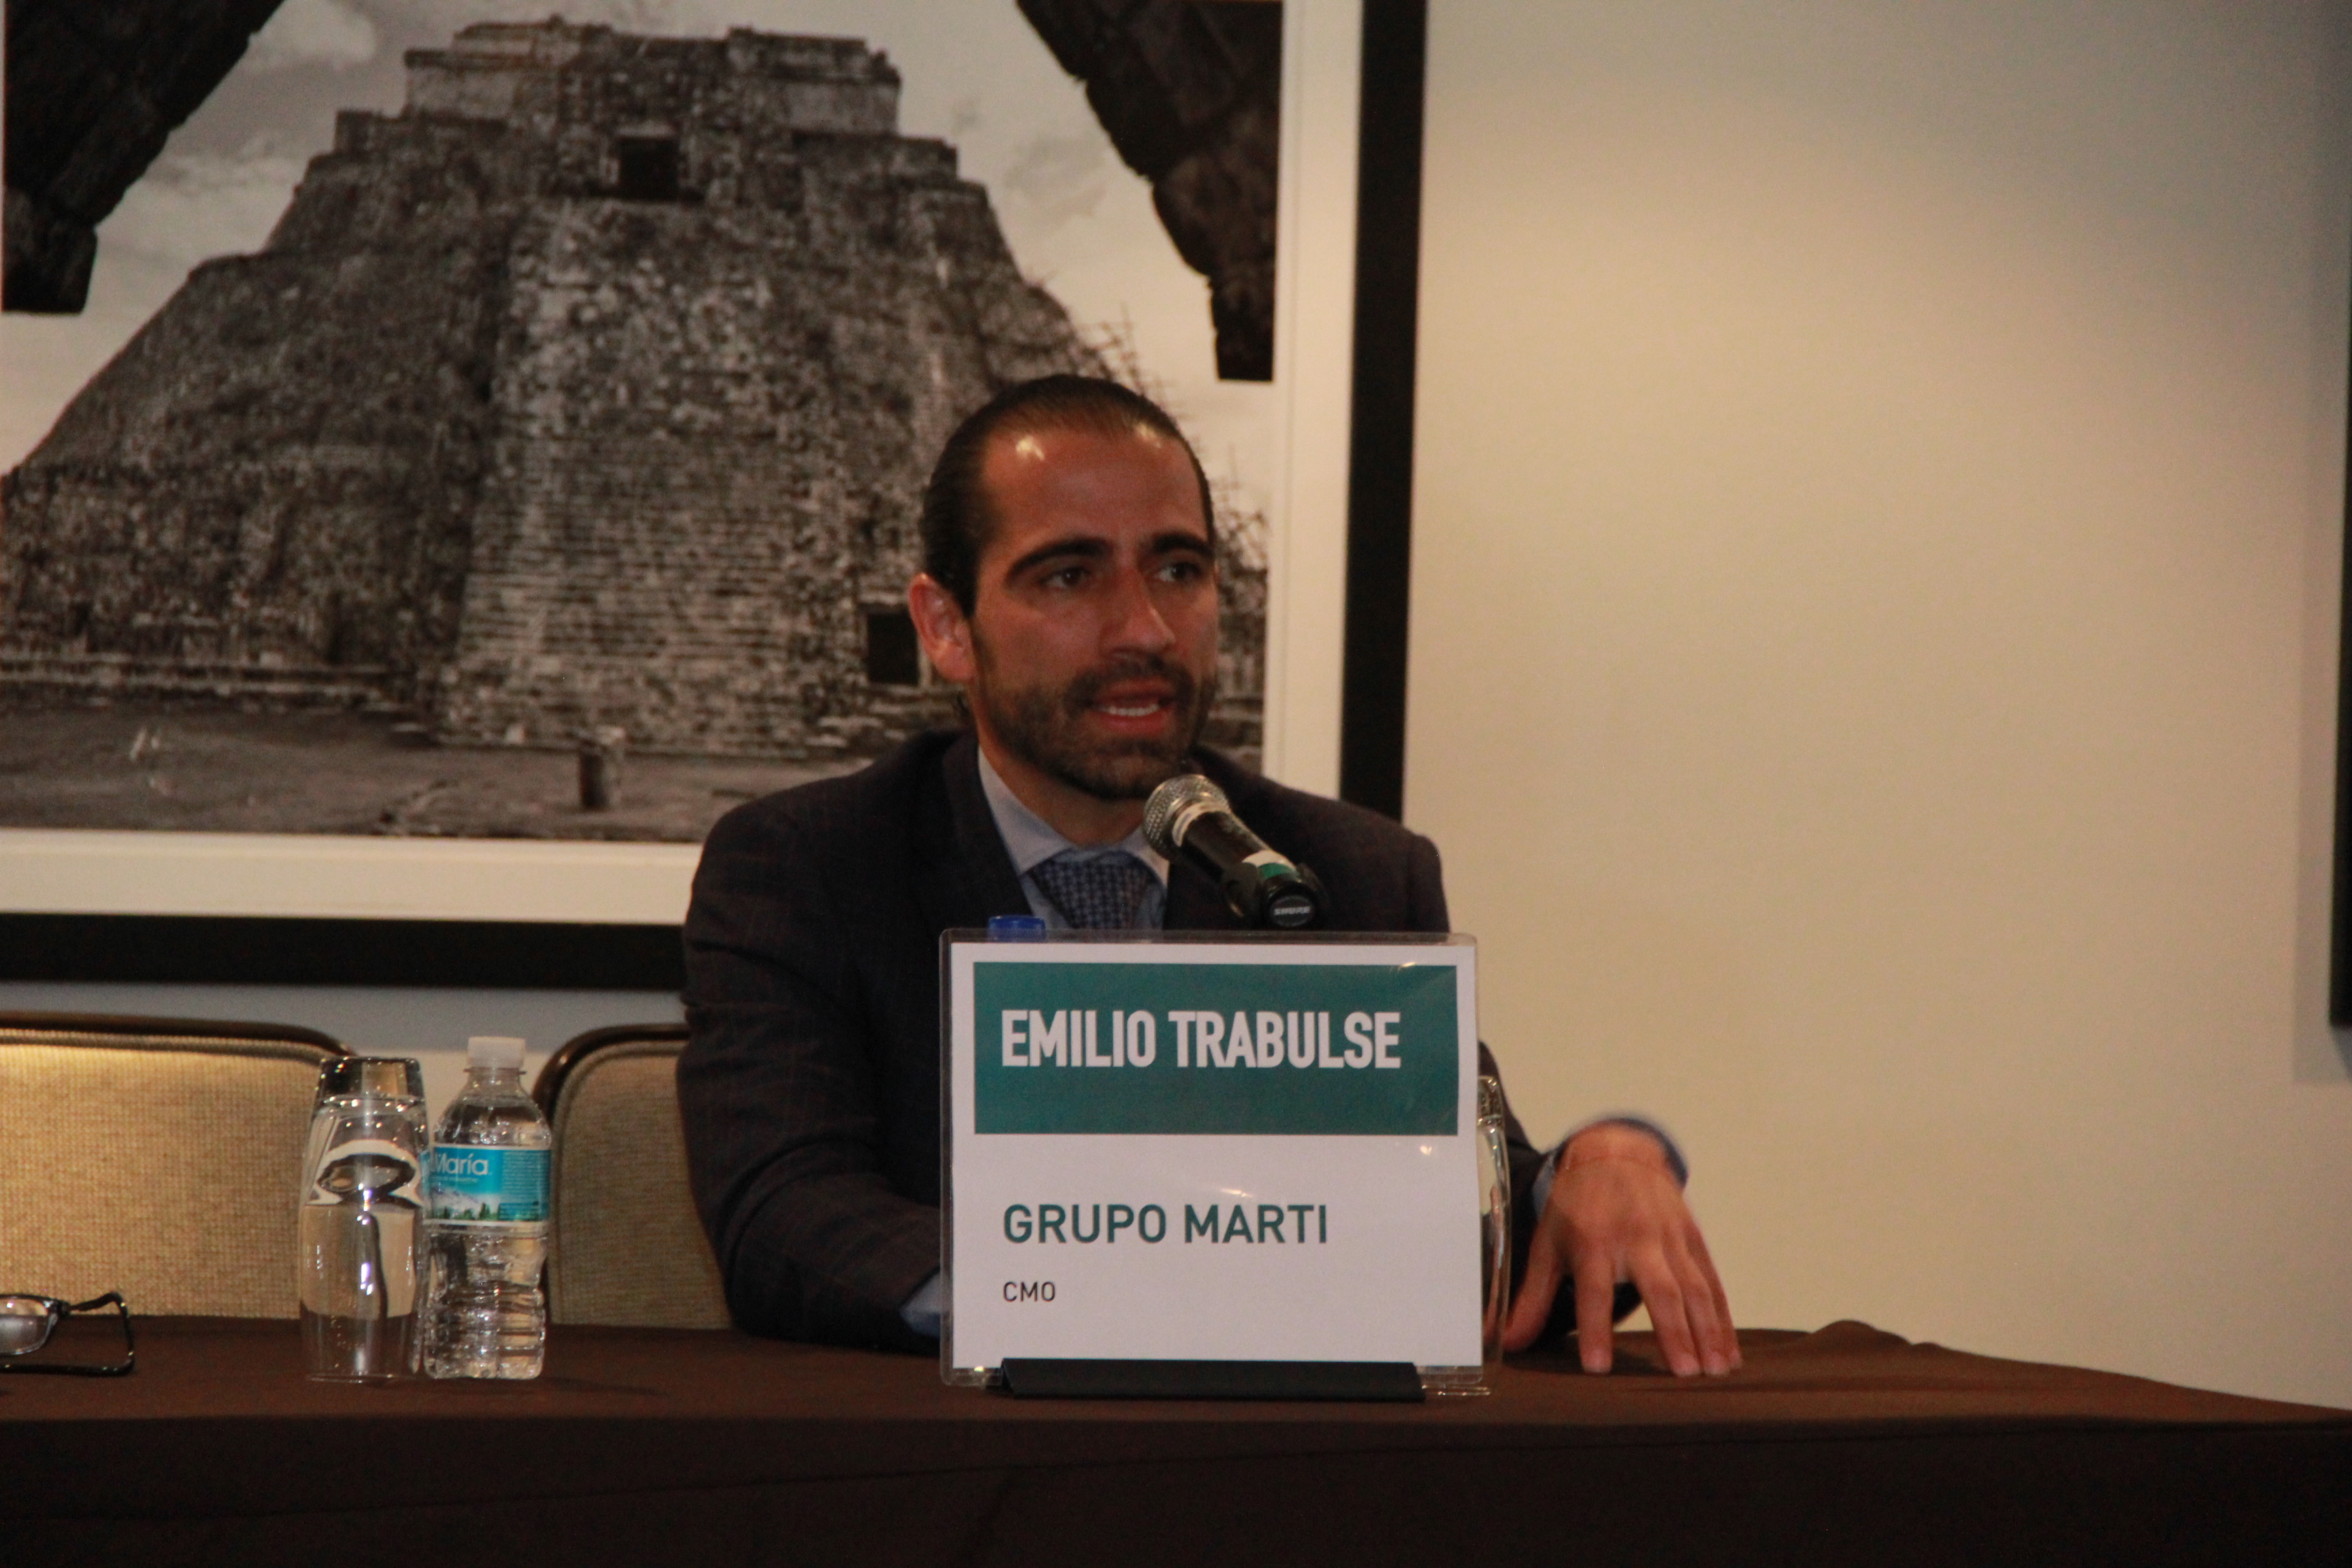 Emilio Trabulse, Director de Marketing, Grupo Martí